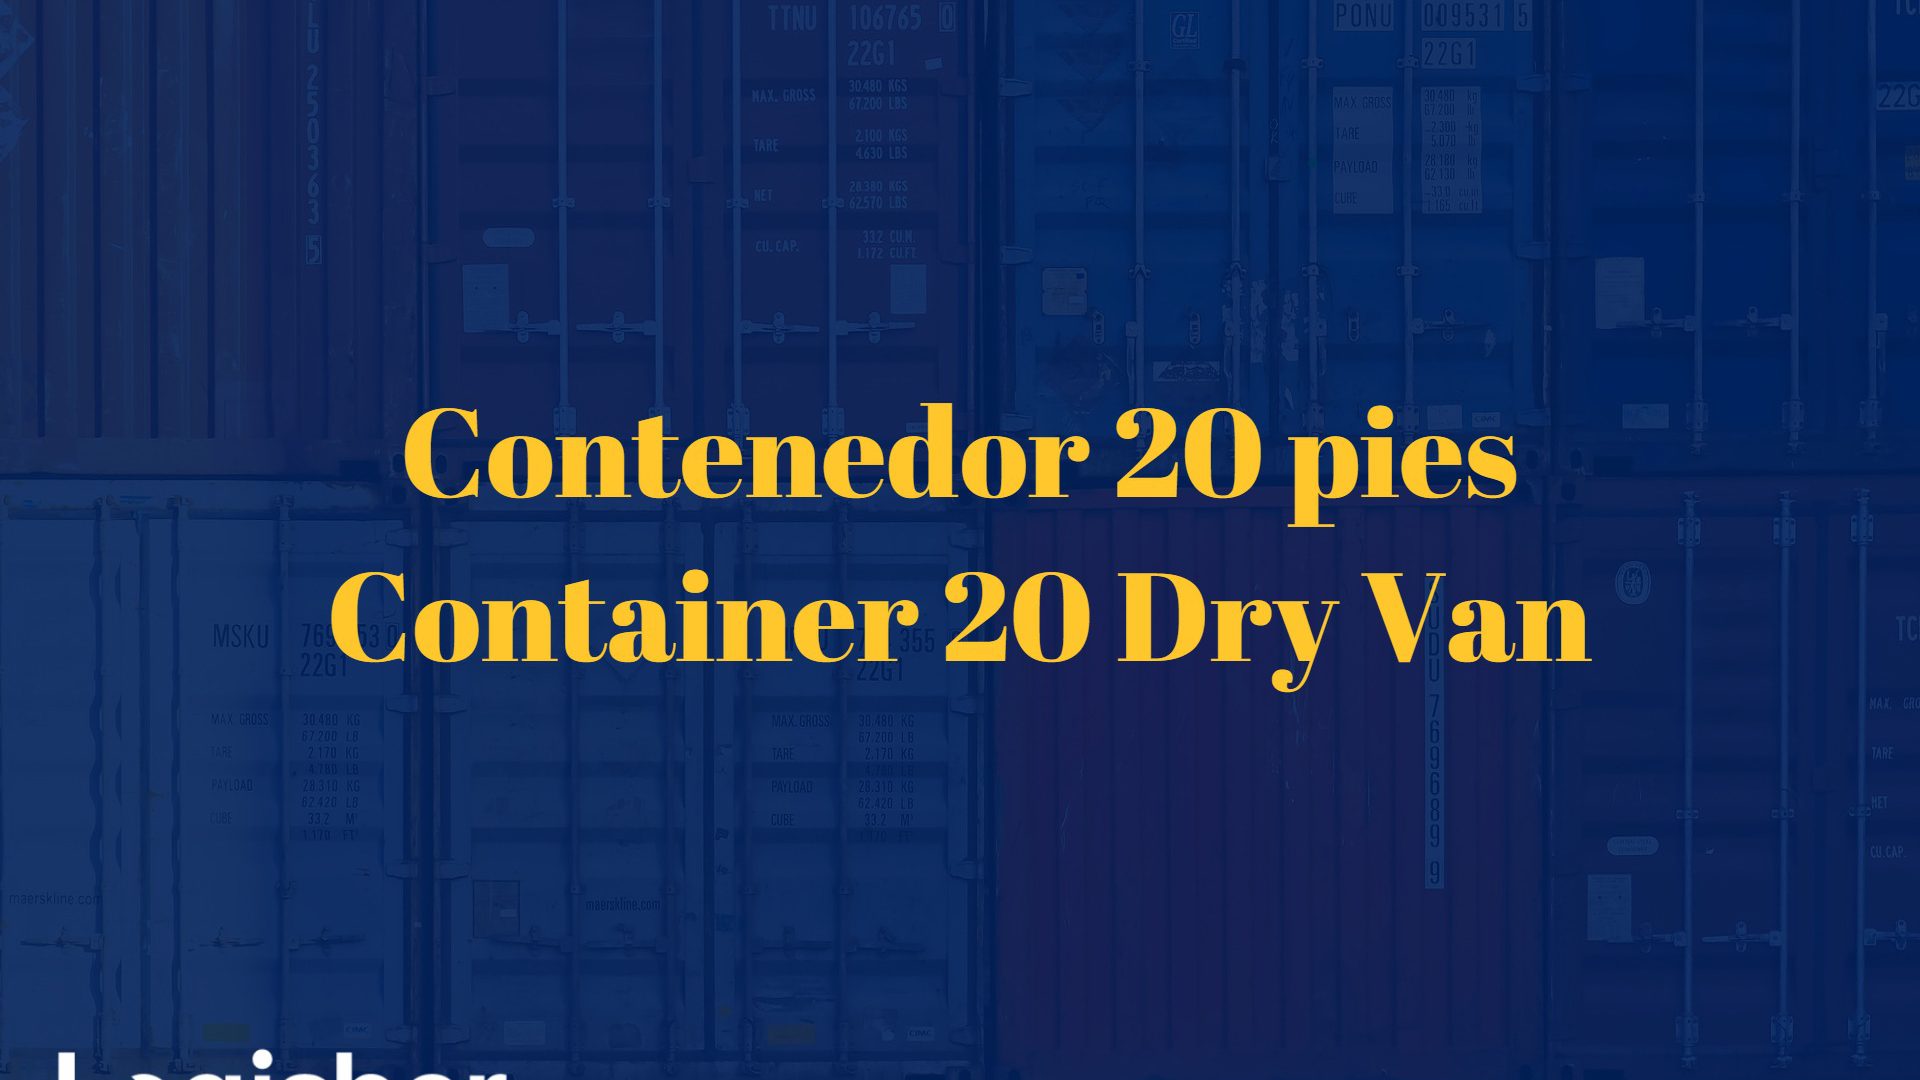 Contenedor 20 pies - Container 20 Dry Van